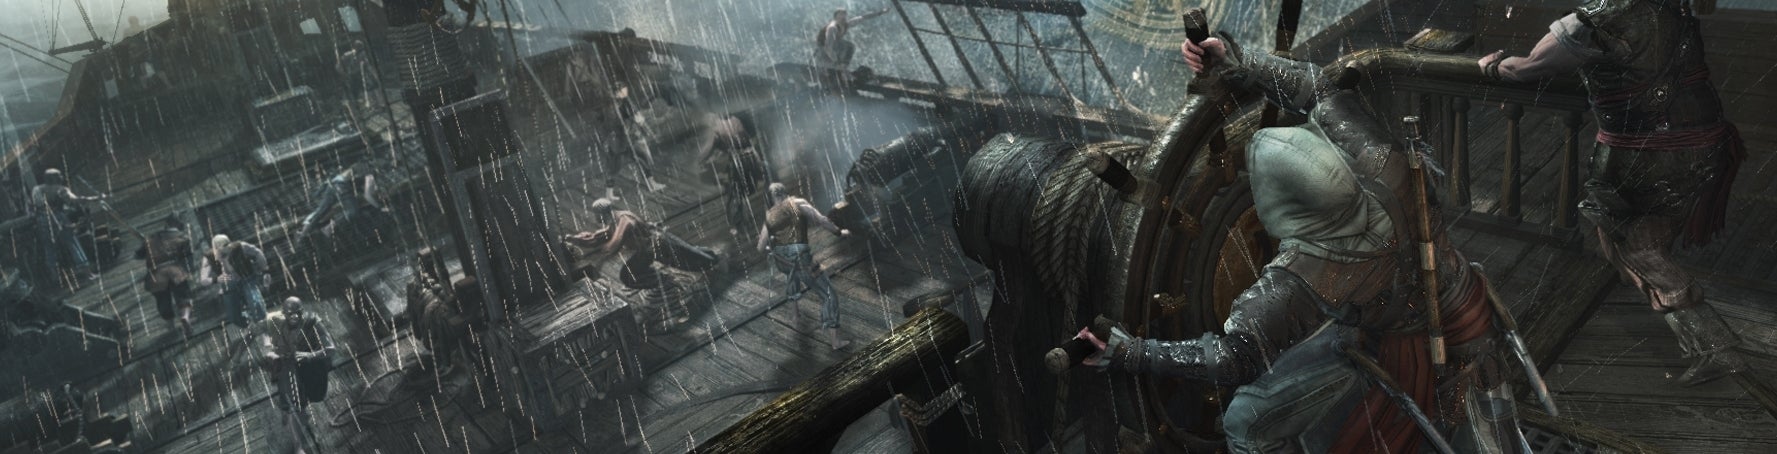 Bilder zu Eg.de Frühstart - Xbox One, Assassin's Creed 4, Steam Dev Days